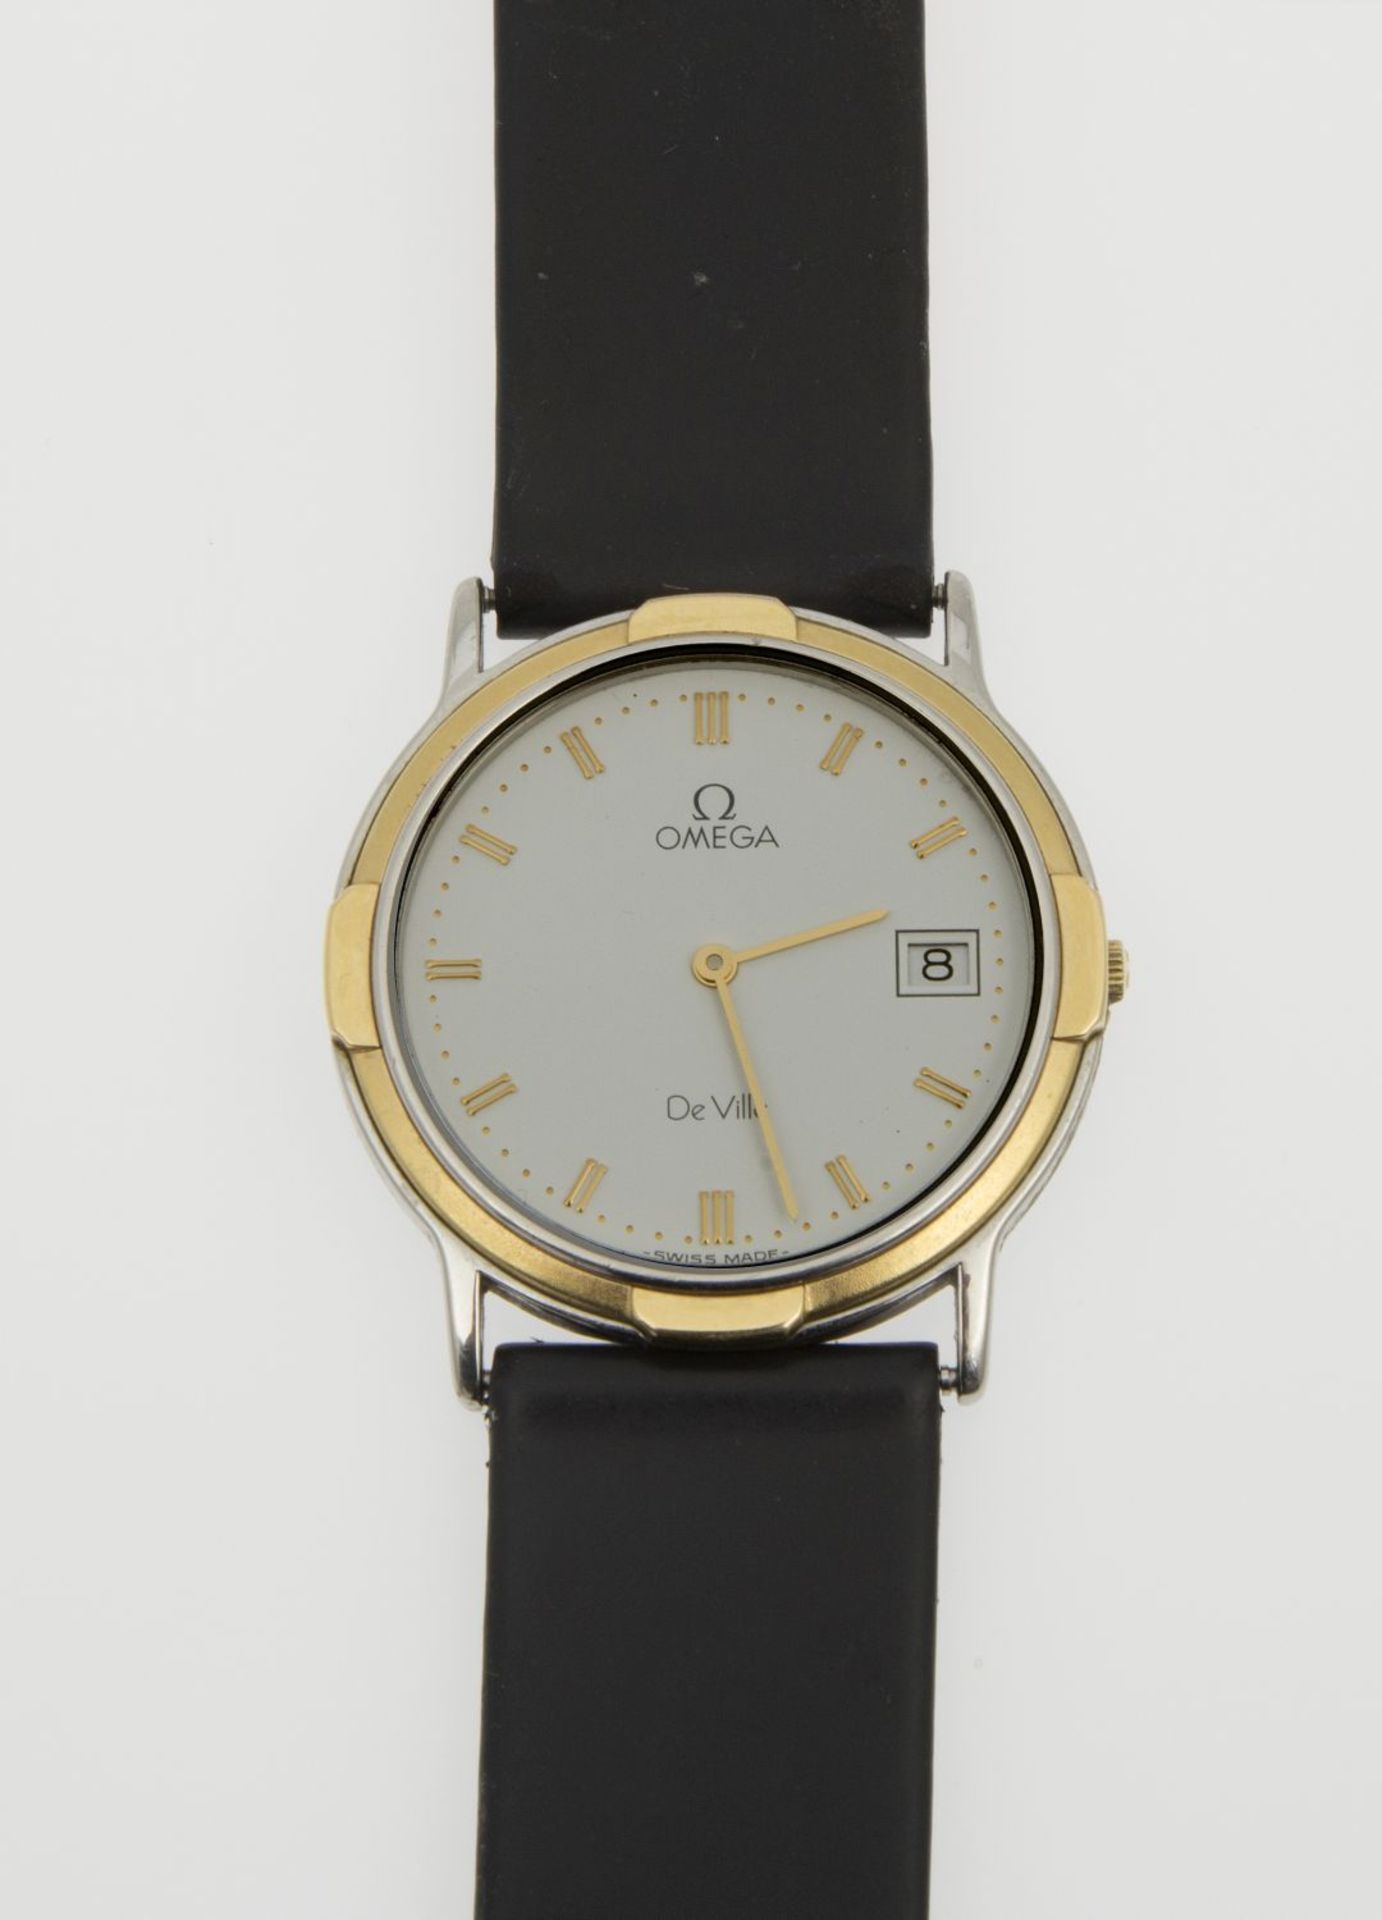 Omega-Armbanduhr De VilleFlaches Gehäuse aus Stahl, partiell vergoldet. Weißes Zifferblatt mit - Bild 3 aus 3